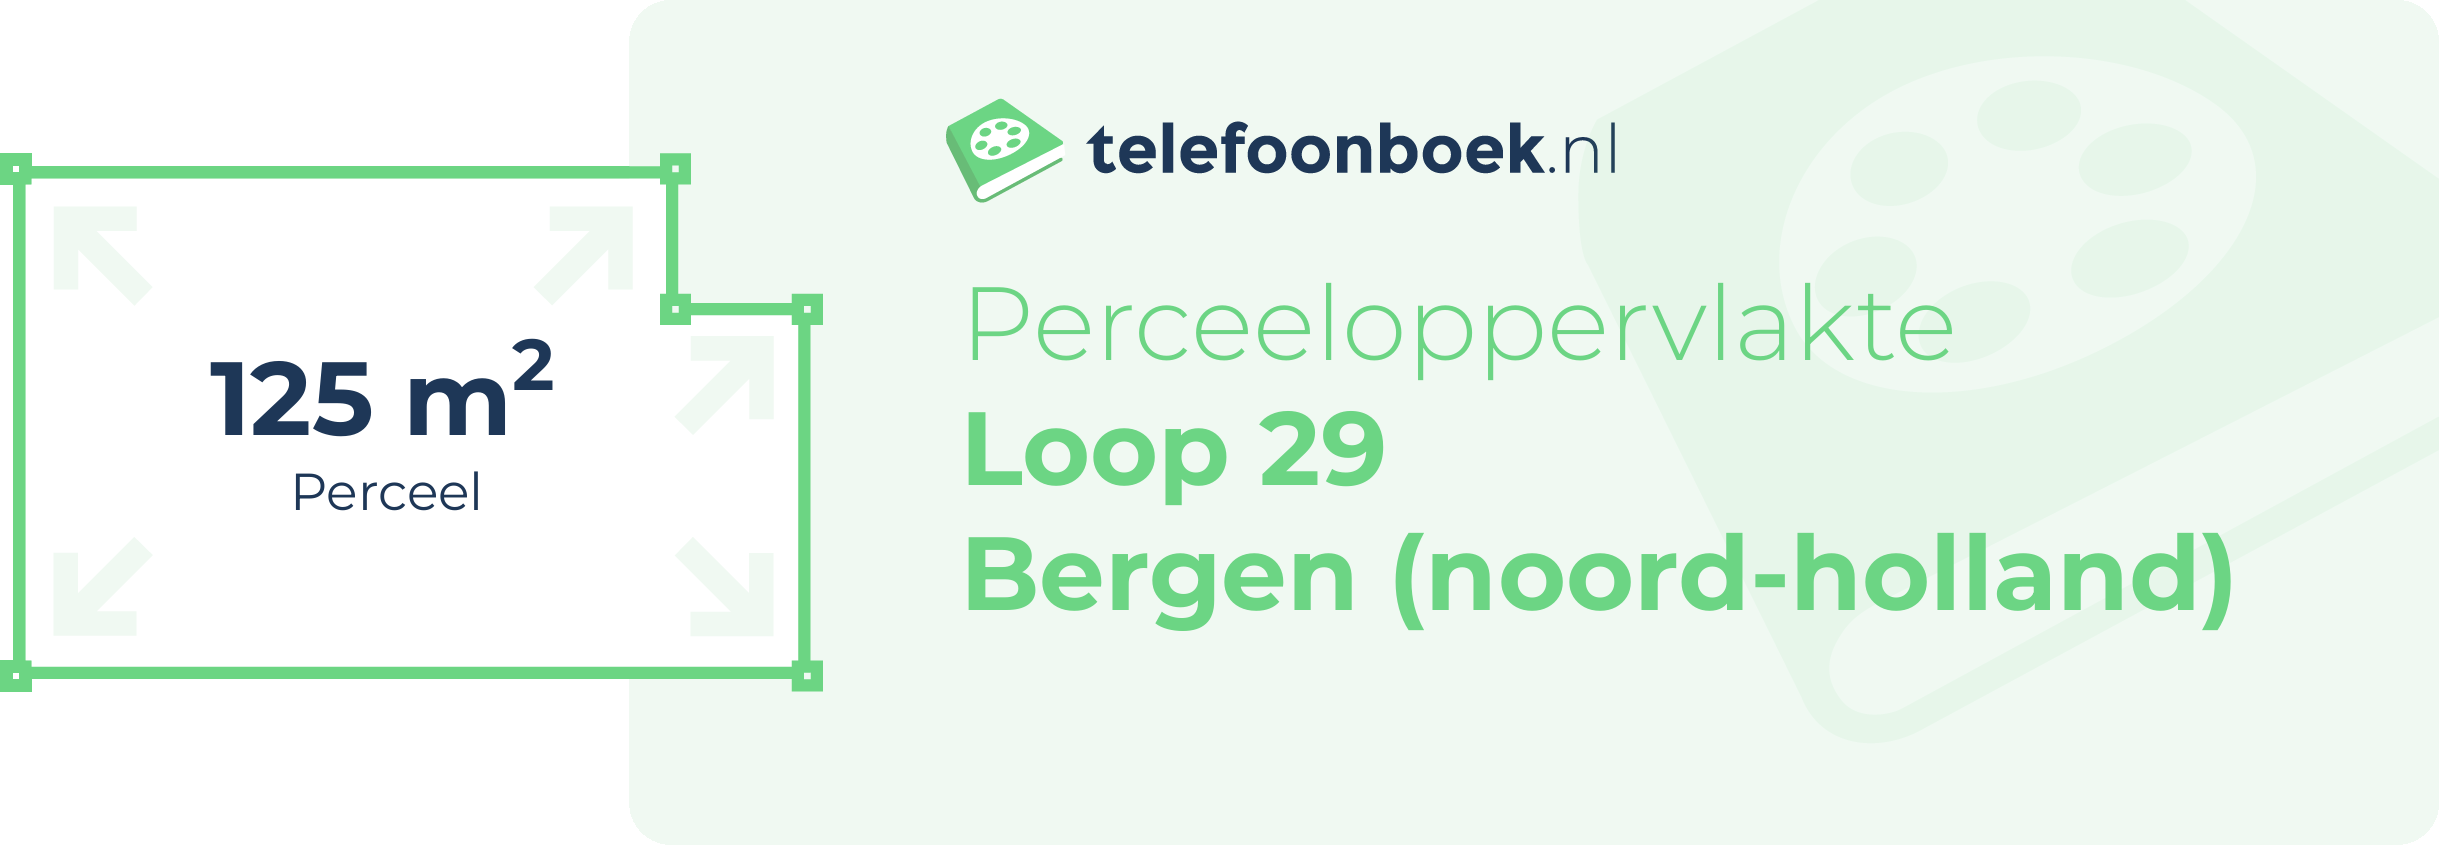 Perceeloppervlakte Loop 29 Bergen (Noord-Holland)